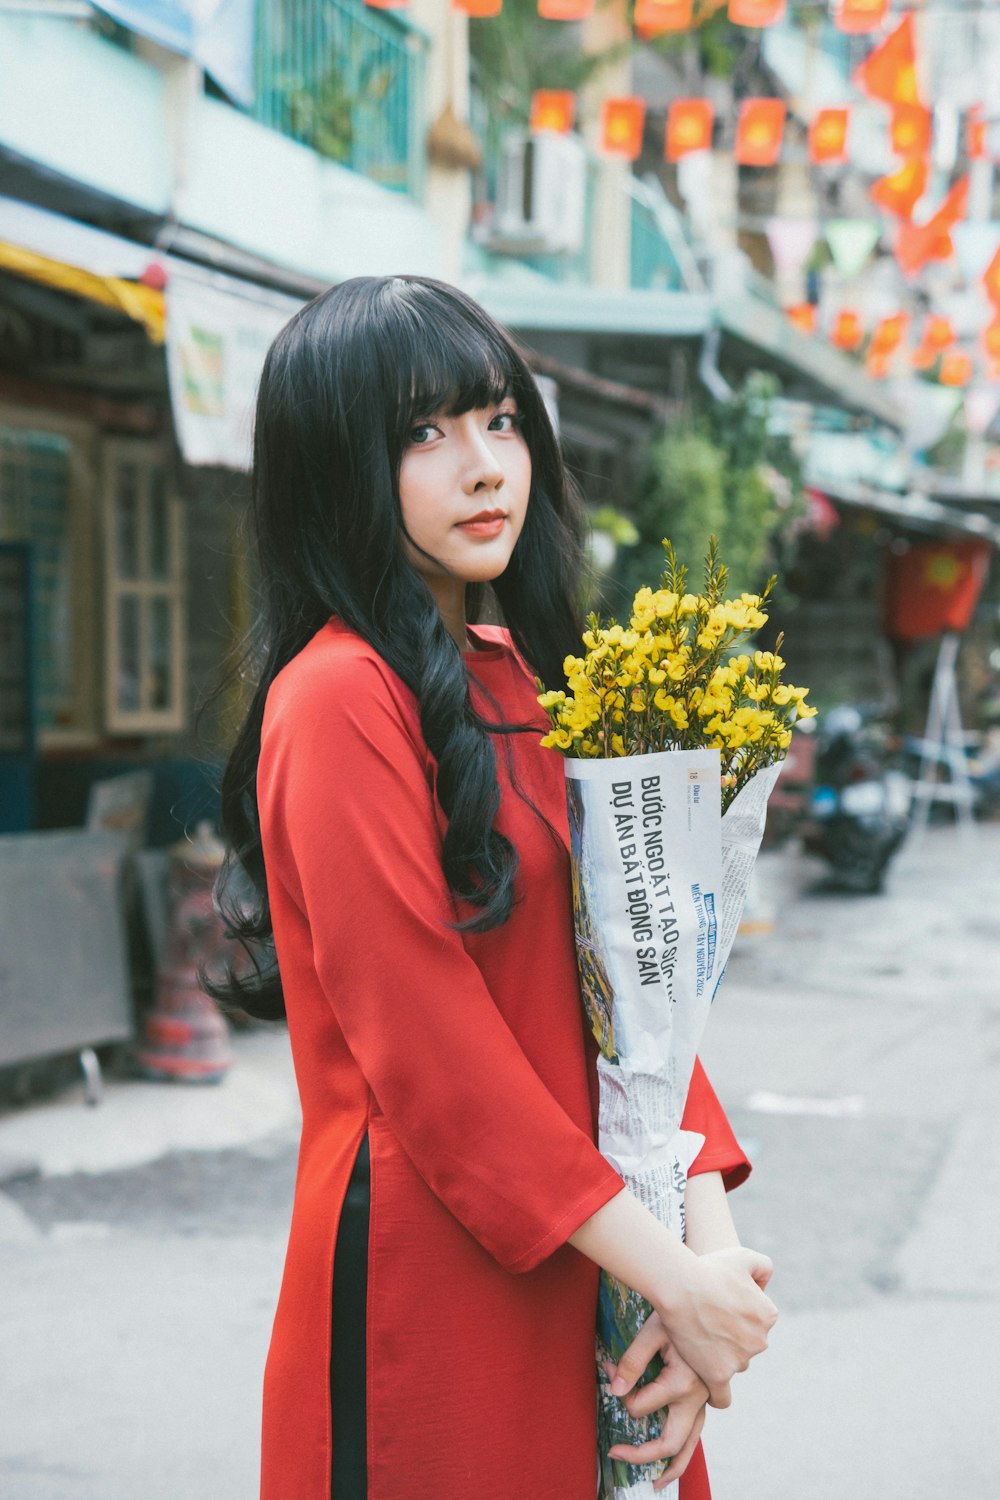 Una mujer con un vestido rojo sosteniendo un ramo de flores